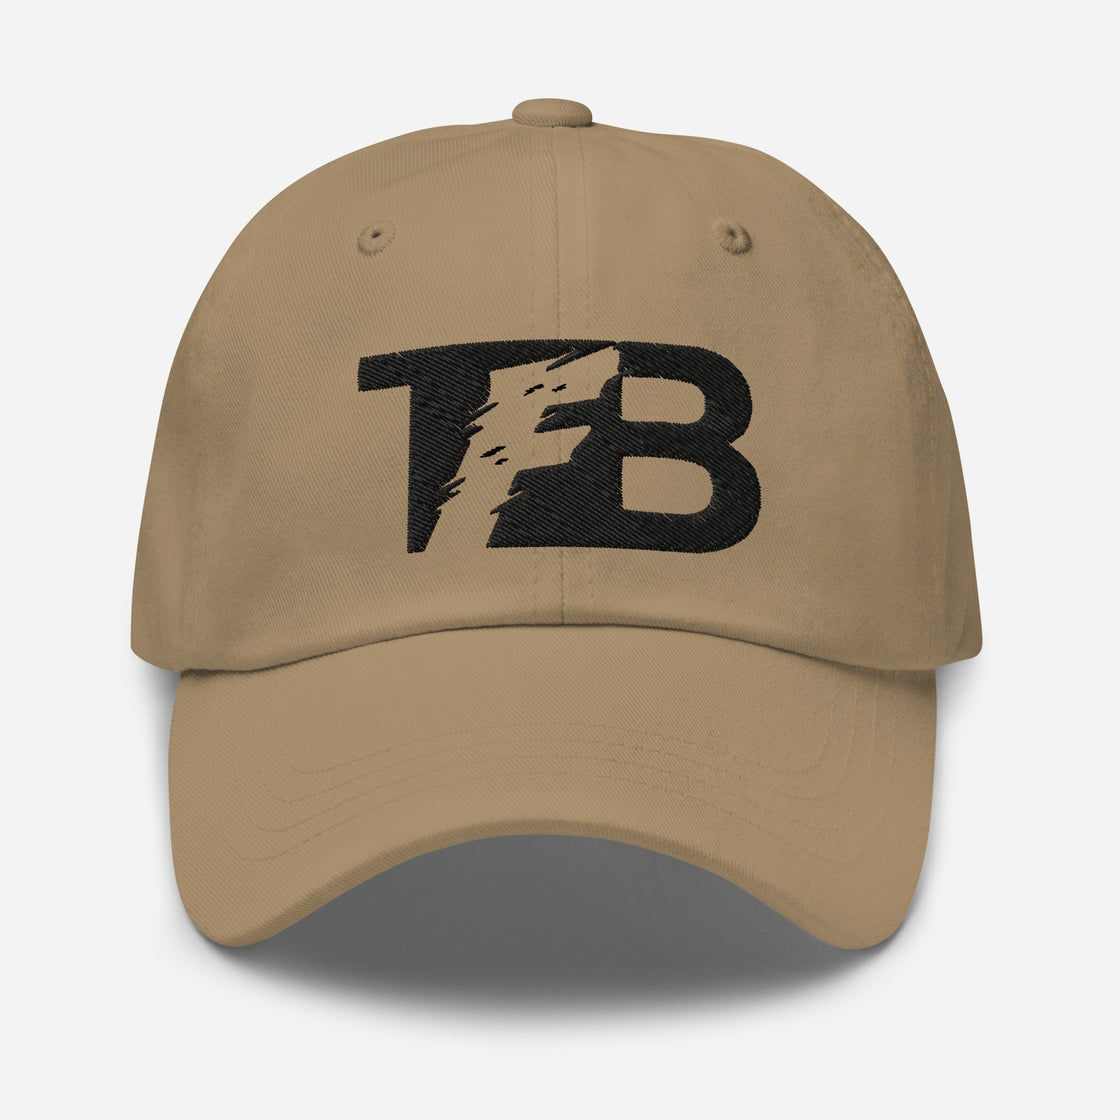 TFB Cap